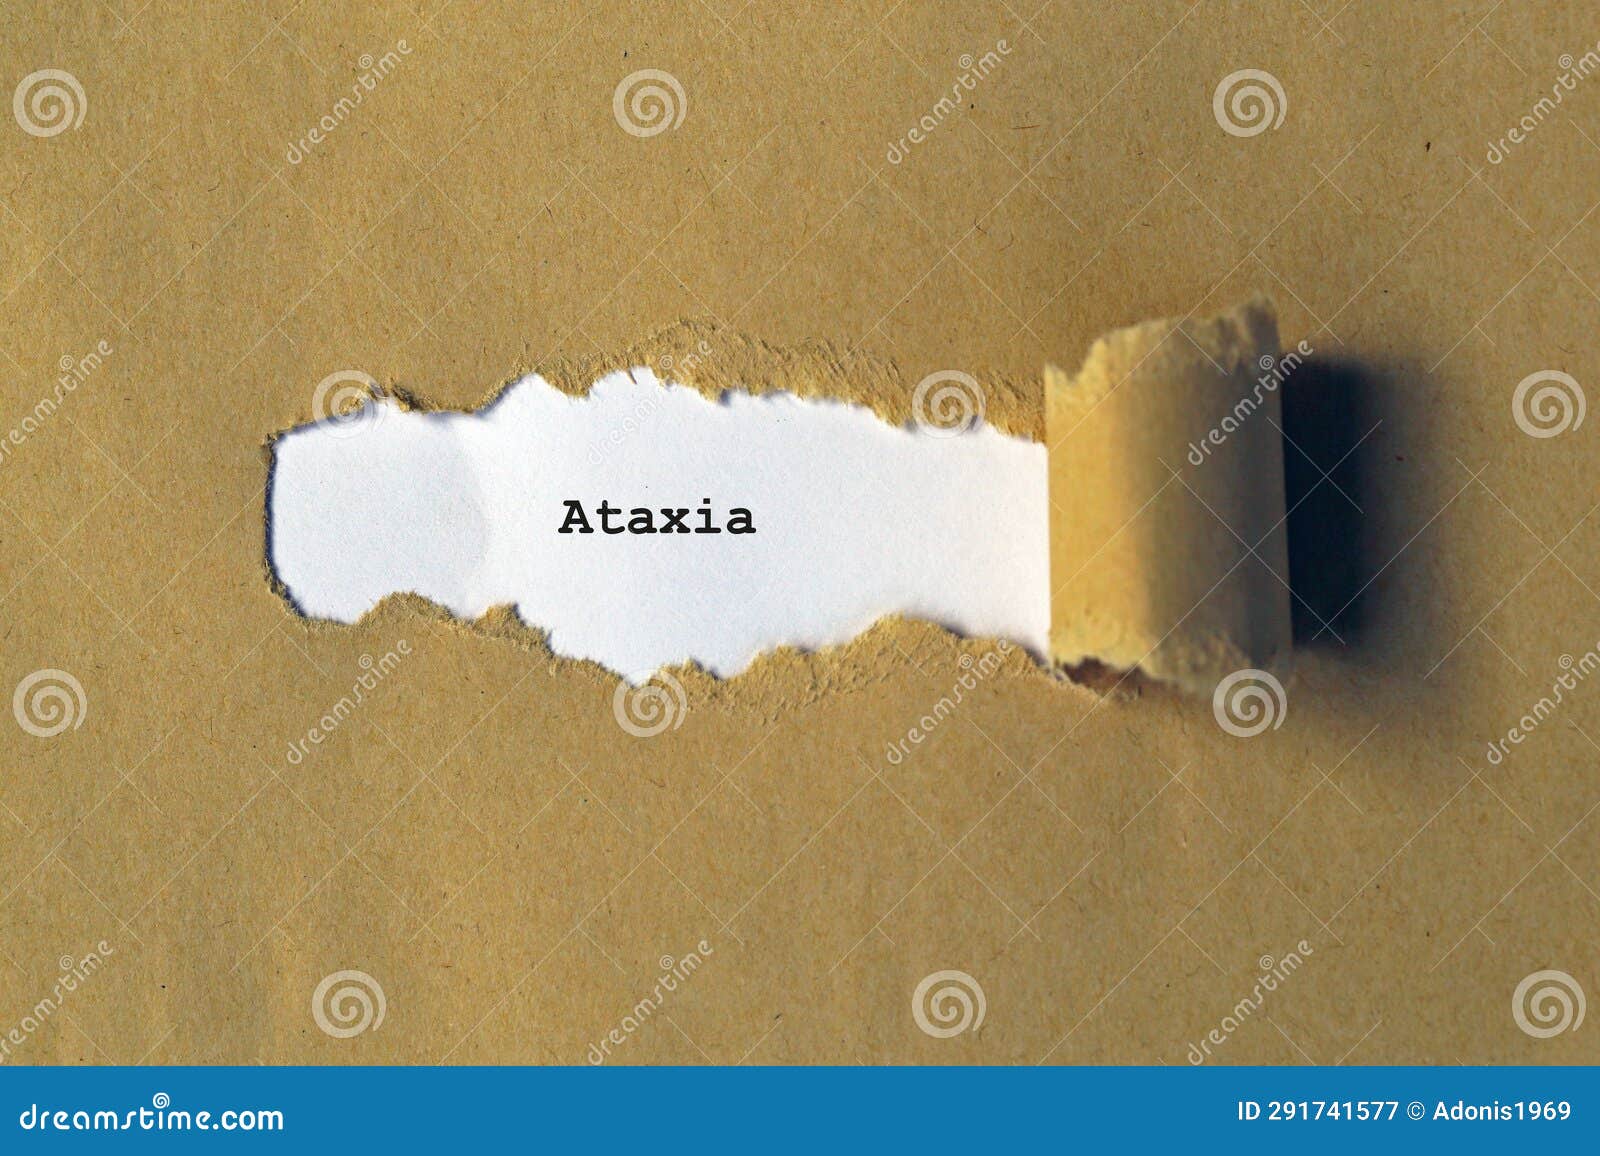 ataxia on white paper